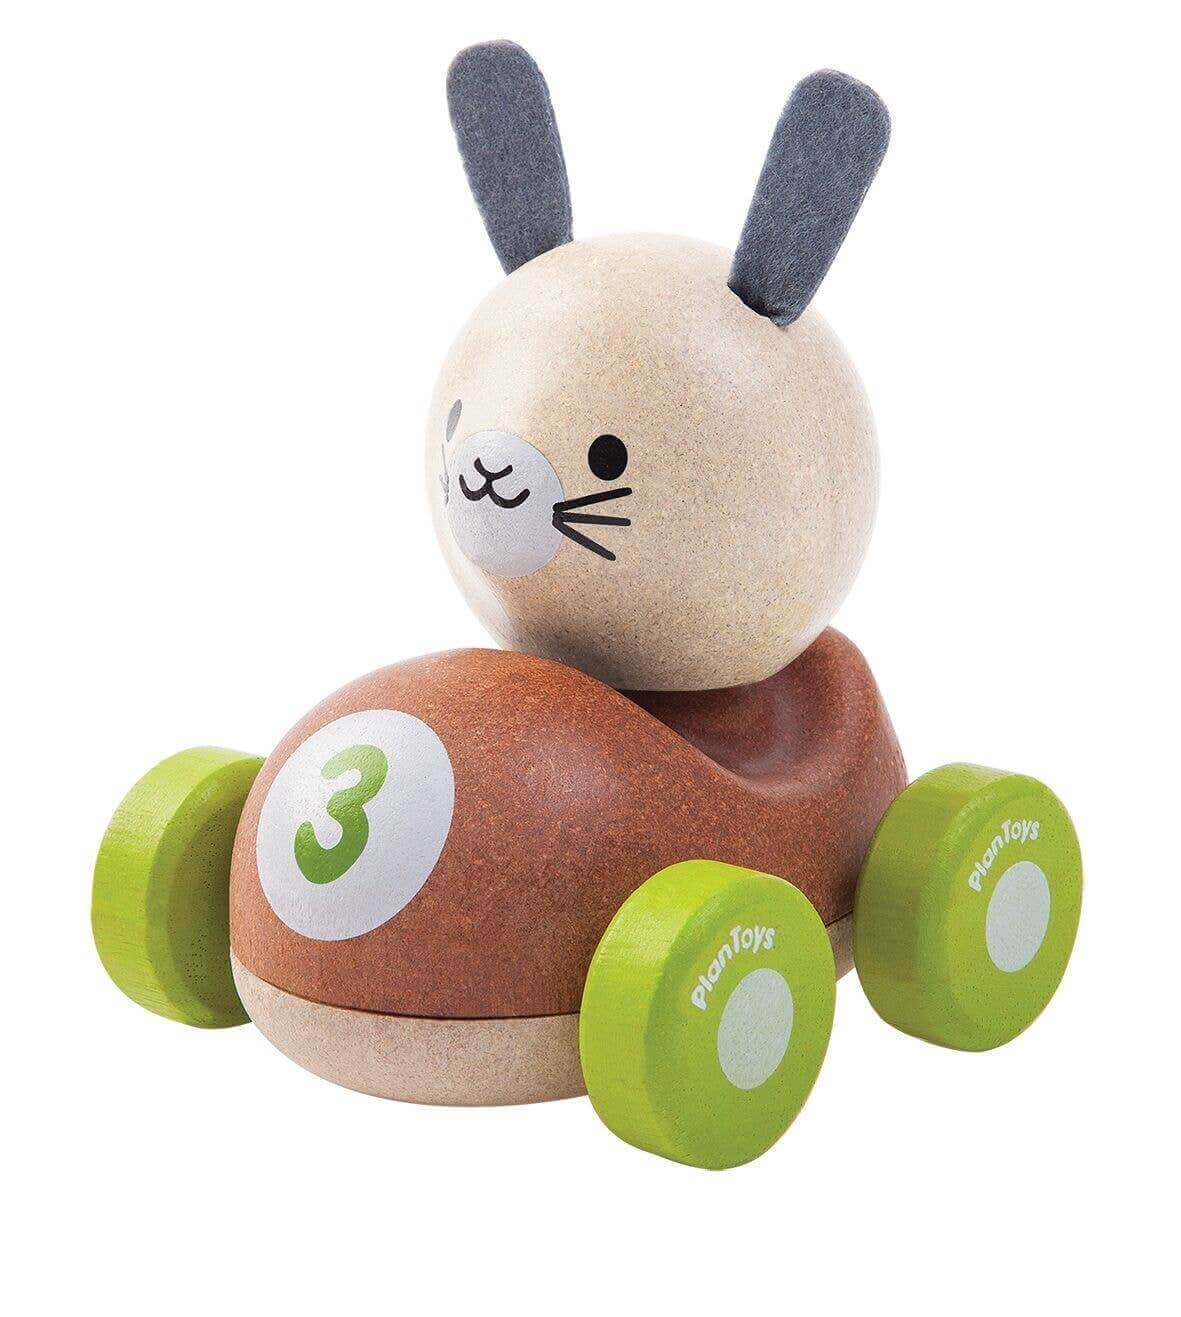 Bunny Racer by PlanToys, PlanToys, eco-friendly Toys, Mountain Kids Toys